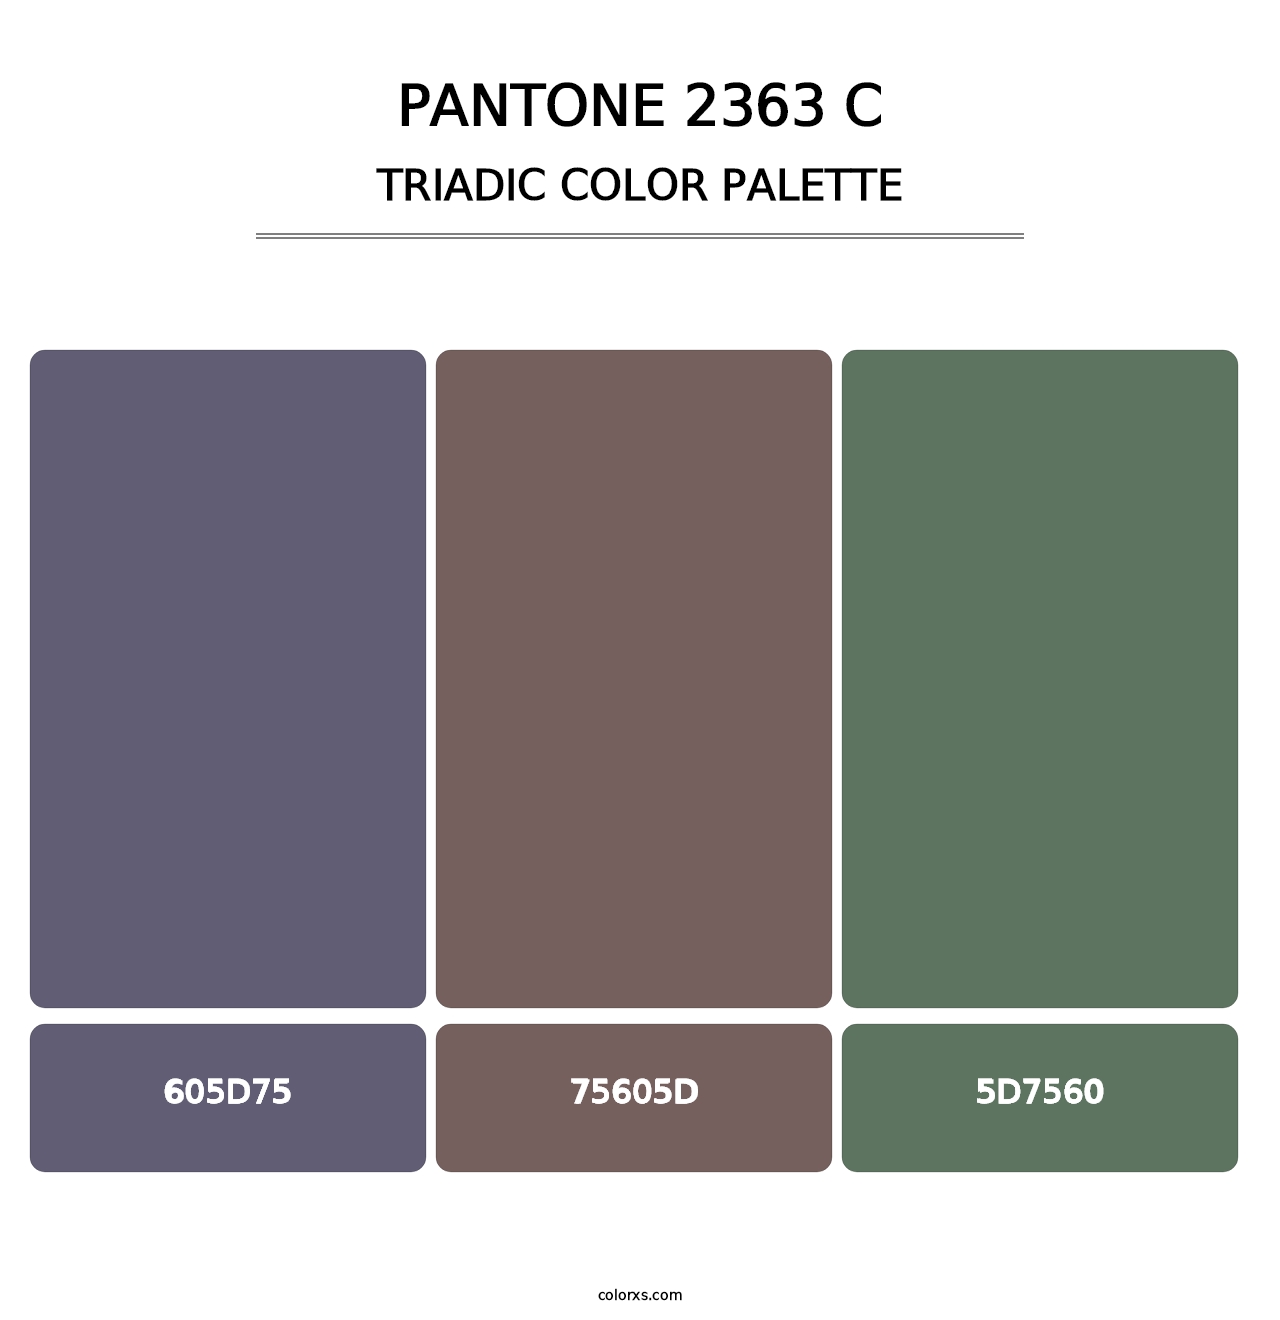 PANTONE 2363 C - Triadic Color Palette